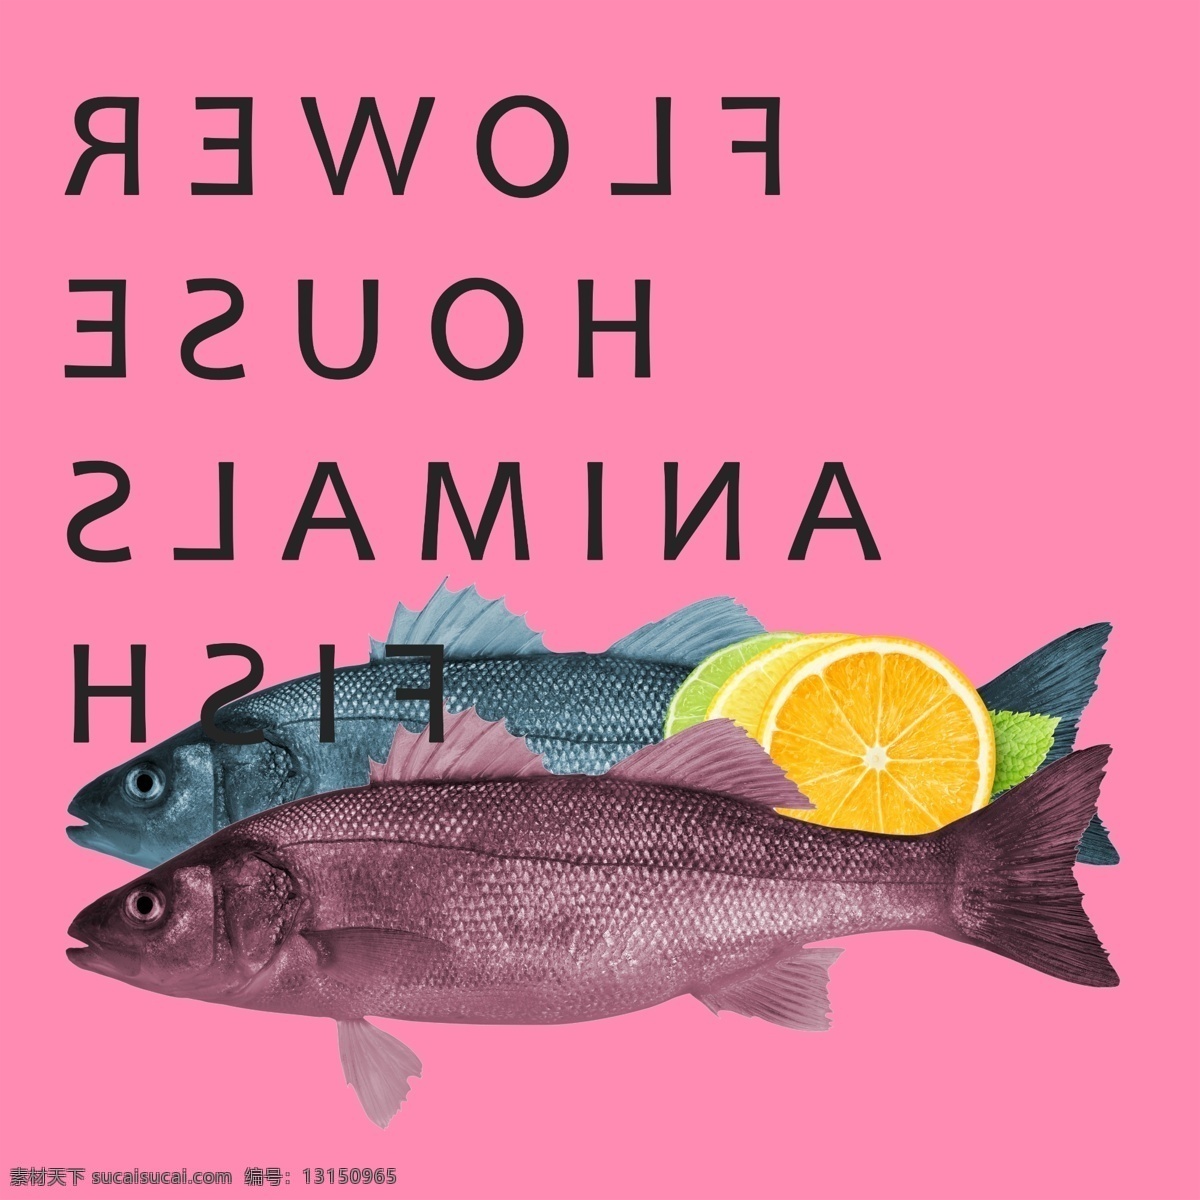 鱼 装饰画 北欧 风格 挂画 餐厅 餐厅挂画 英文字母 动物插画 北欧风格